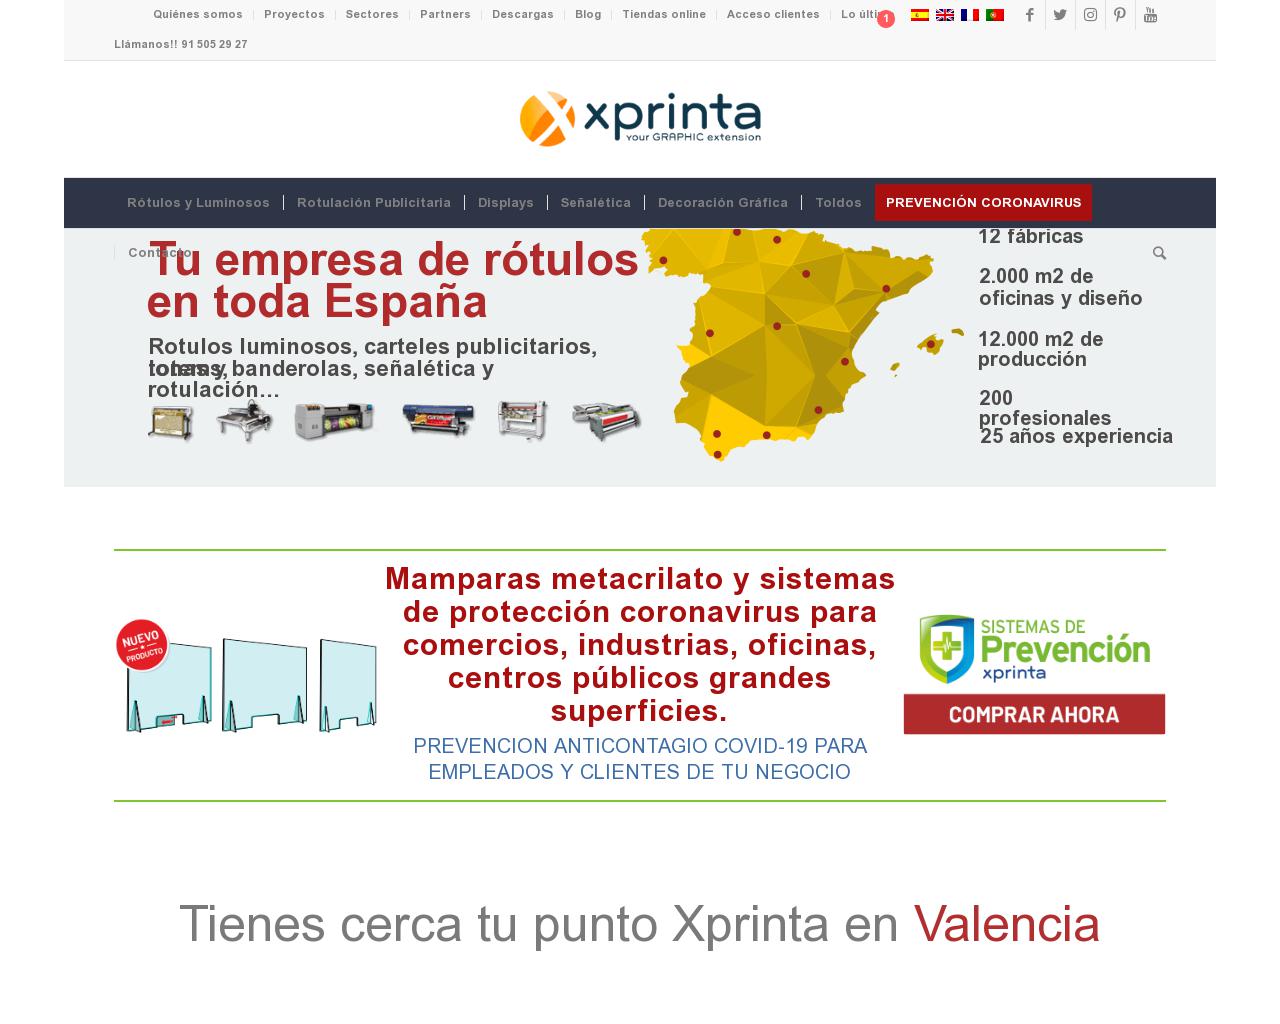 xprinta.com